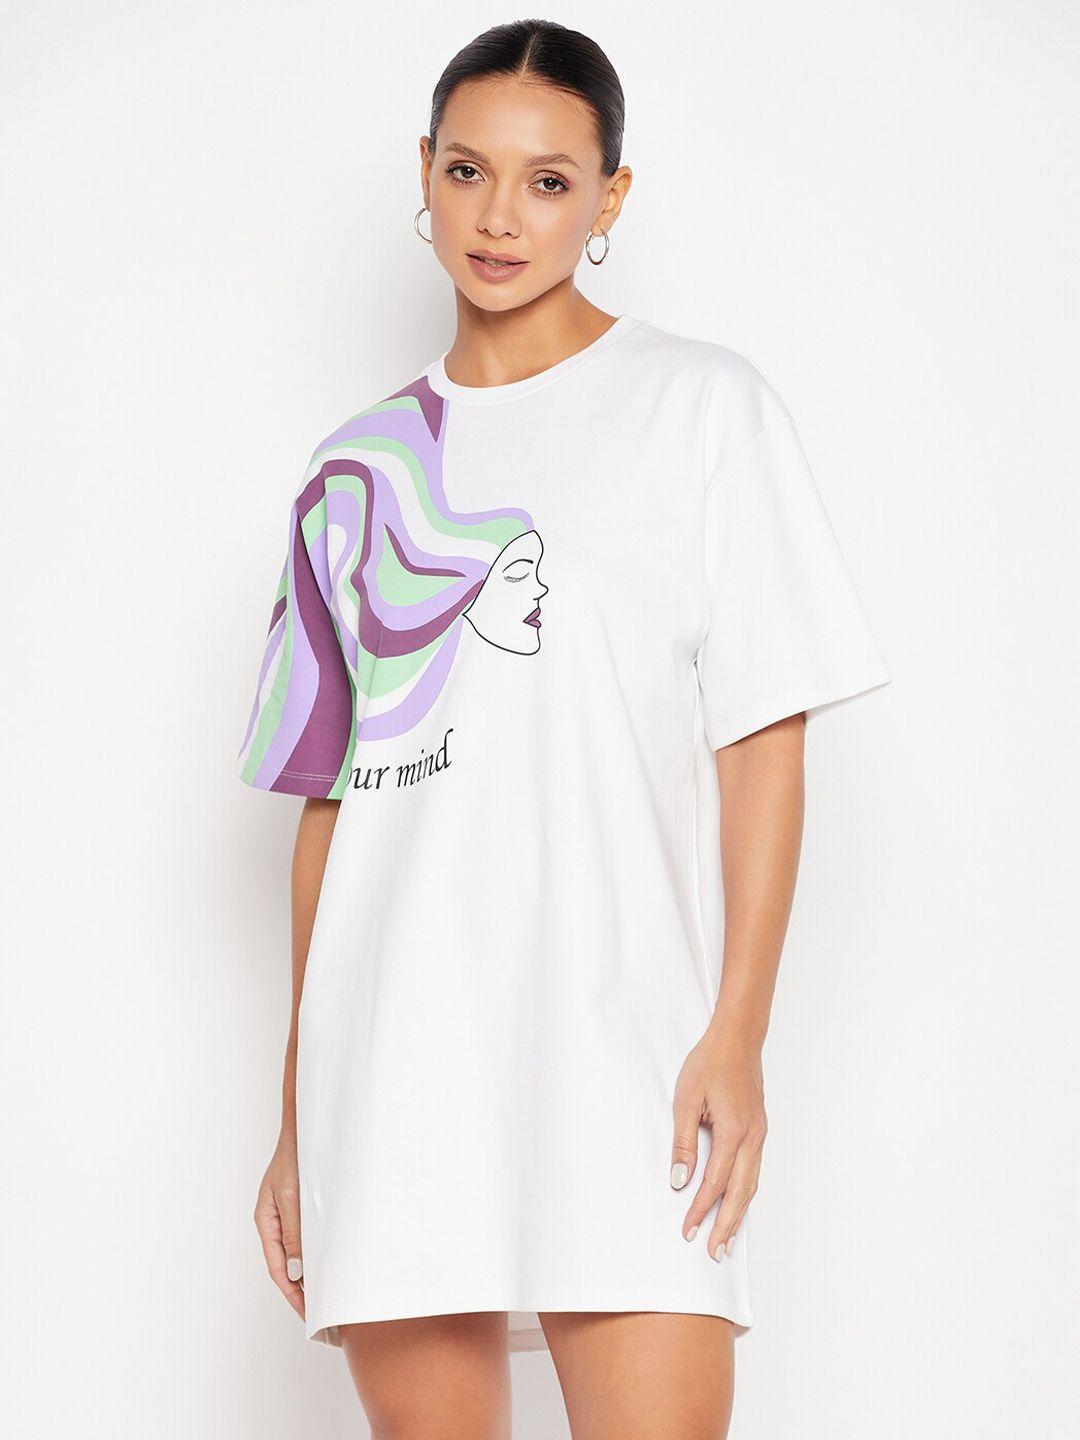 edrio graphic printed t-shirt dress